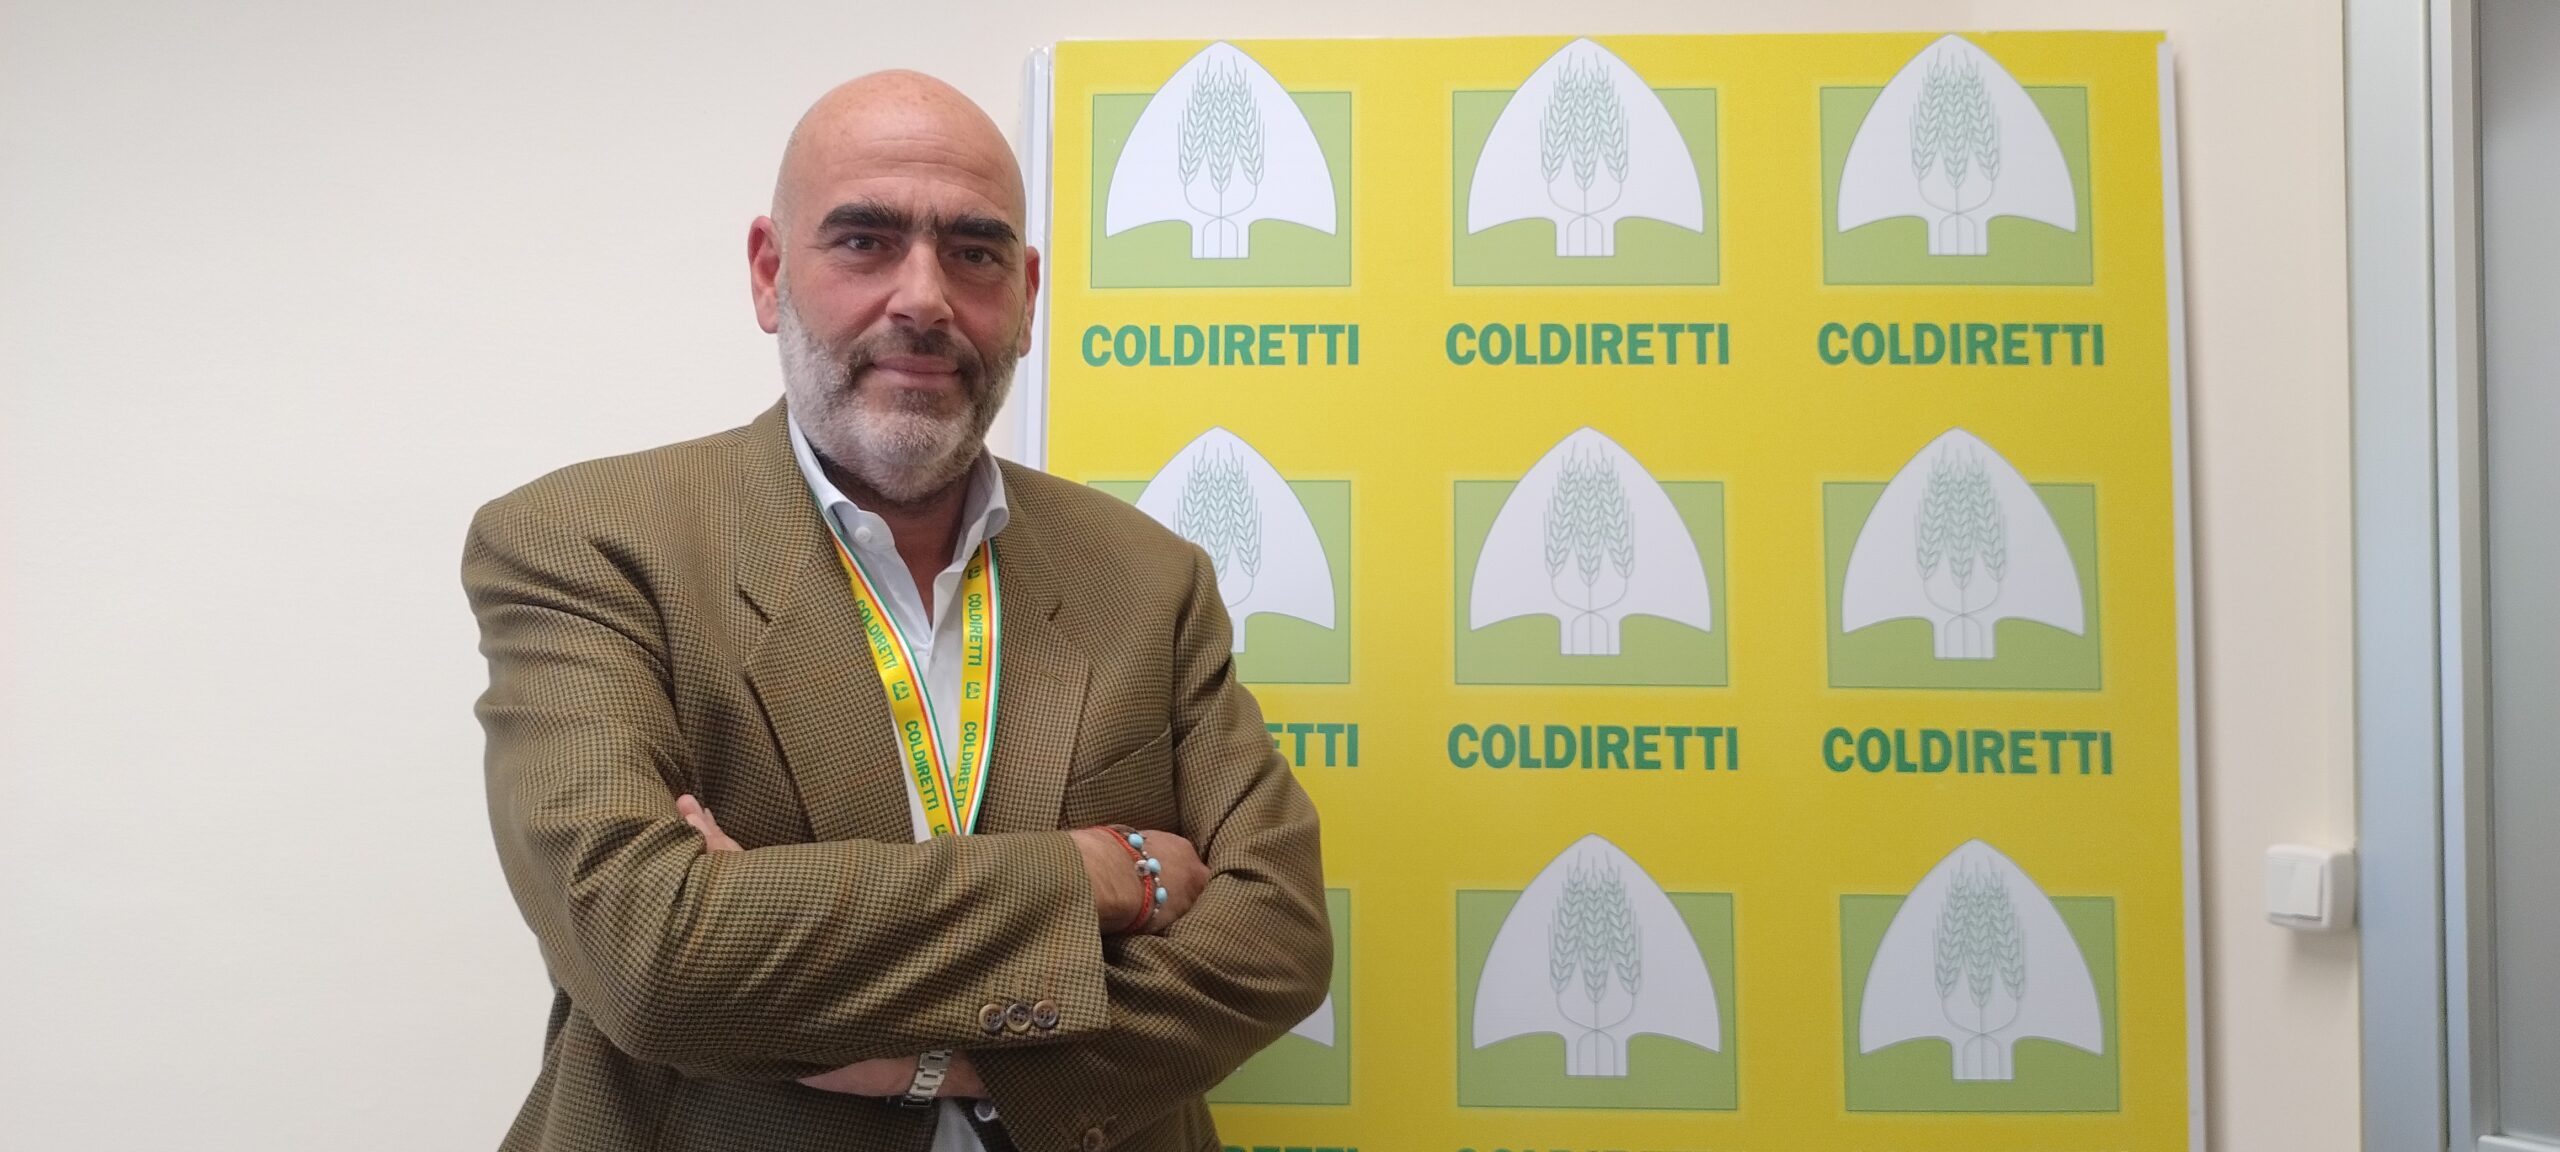 Campania: Coldiretti “Plauso per stop a fotovoltaico”